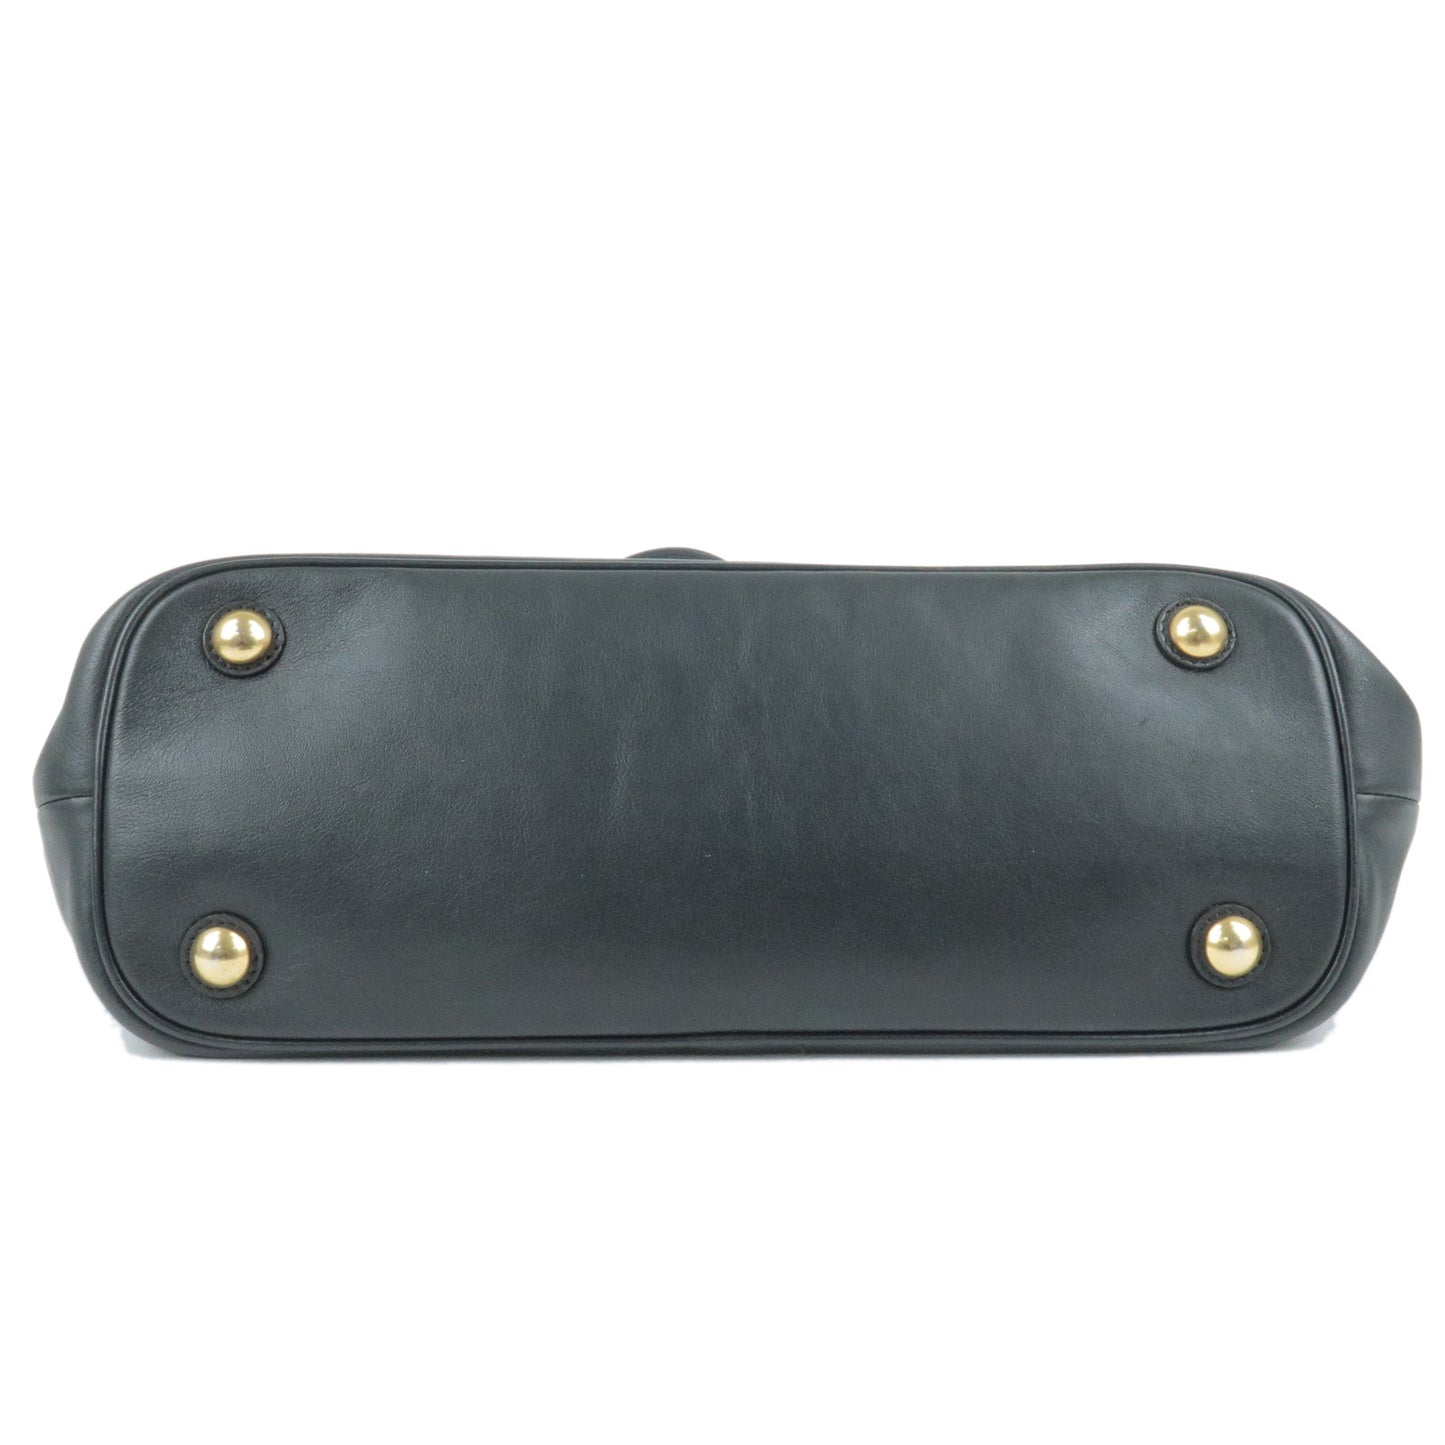 ETRO Leather Embossed Print Tote Bag Shoulder Bag Black